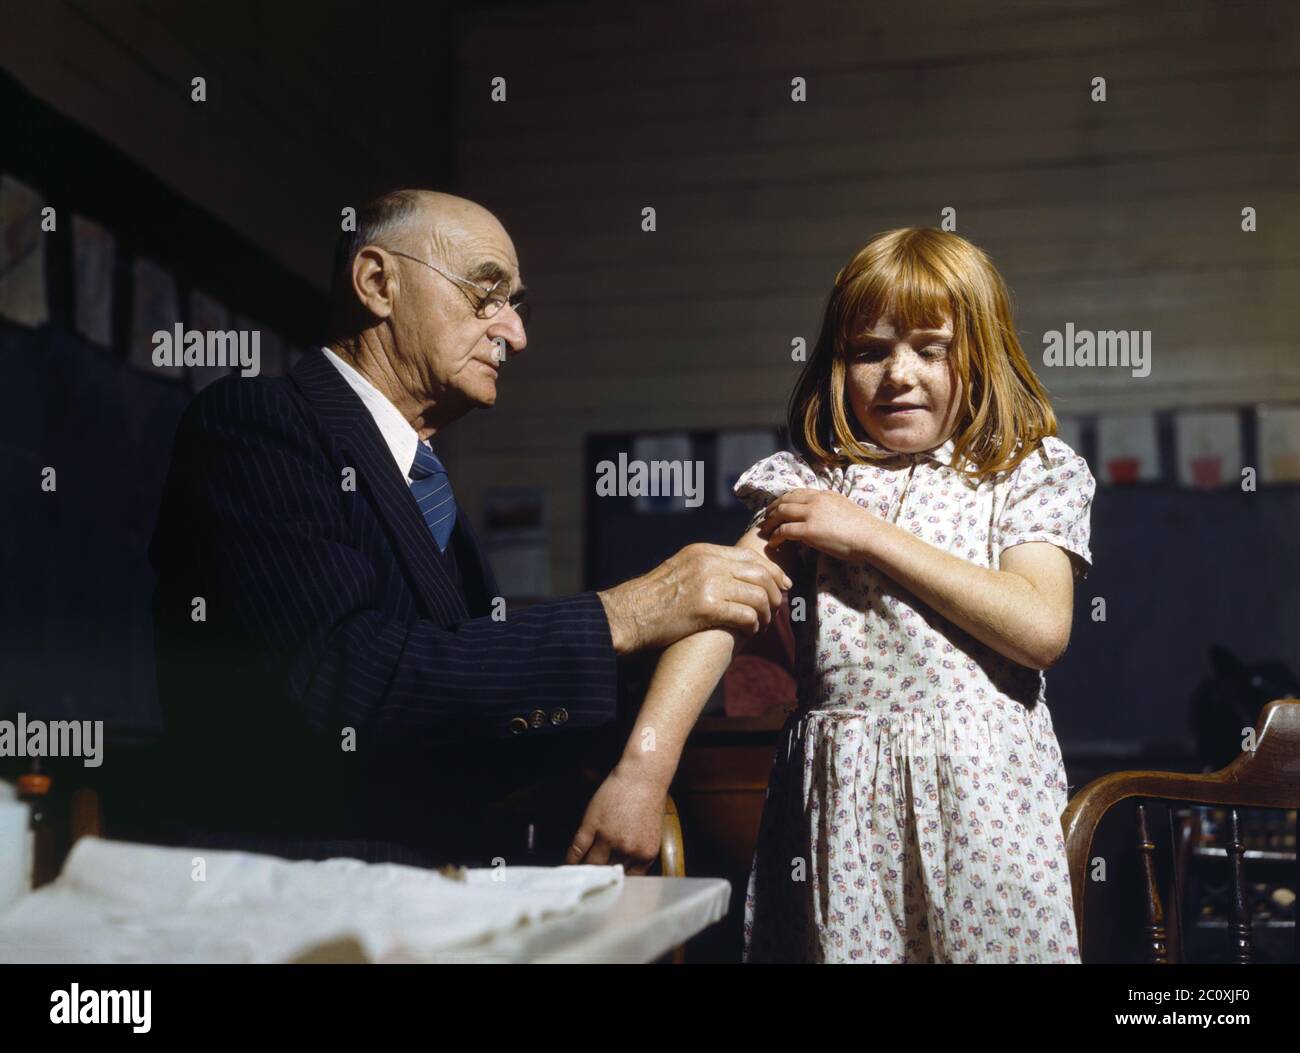 Schreiber, de San Augustine, qui a inoculé la typhoïde dans une école rurale du comté de San Augustine, Texas, États-Unis, John Vachon, administration américaine de la sécurité agricole, avril 1943 Banque D'Images